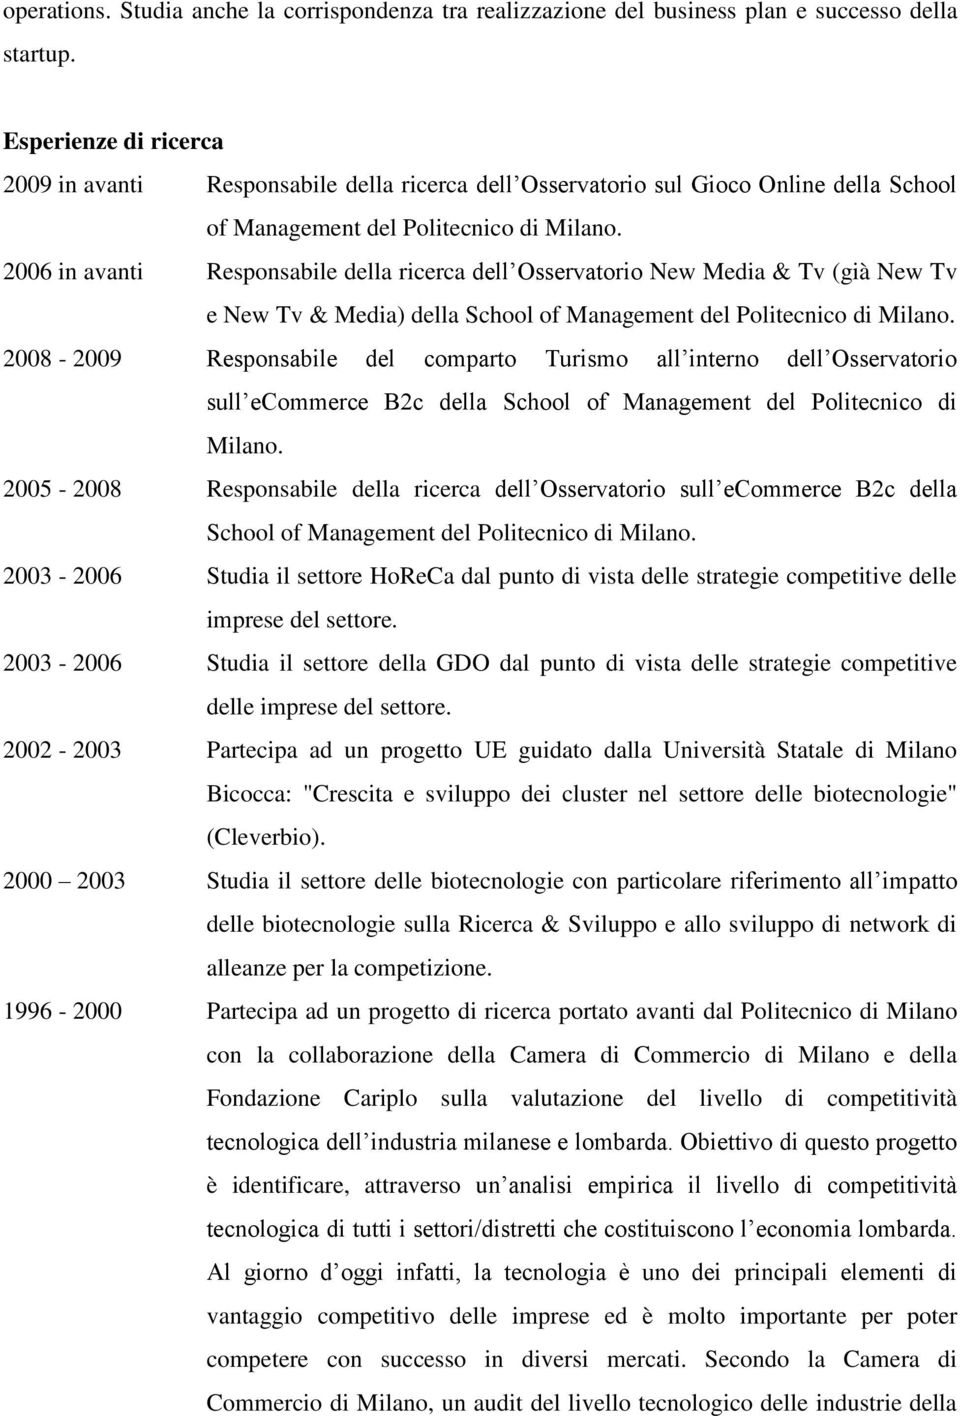 2006 in avanti Responsabile della ricerca dell Osservatorio New Media & Tv (già New Tv e New Tv & Media) della School of Management del Politecnico di Milano.